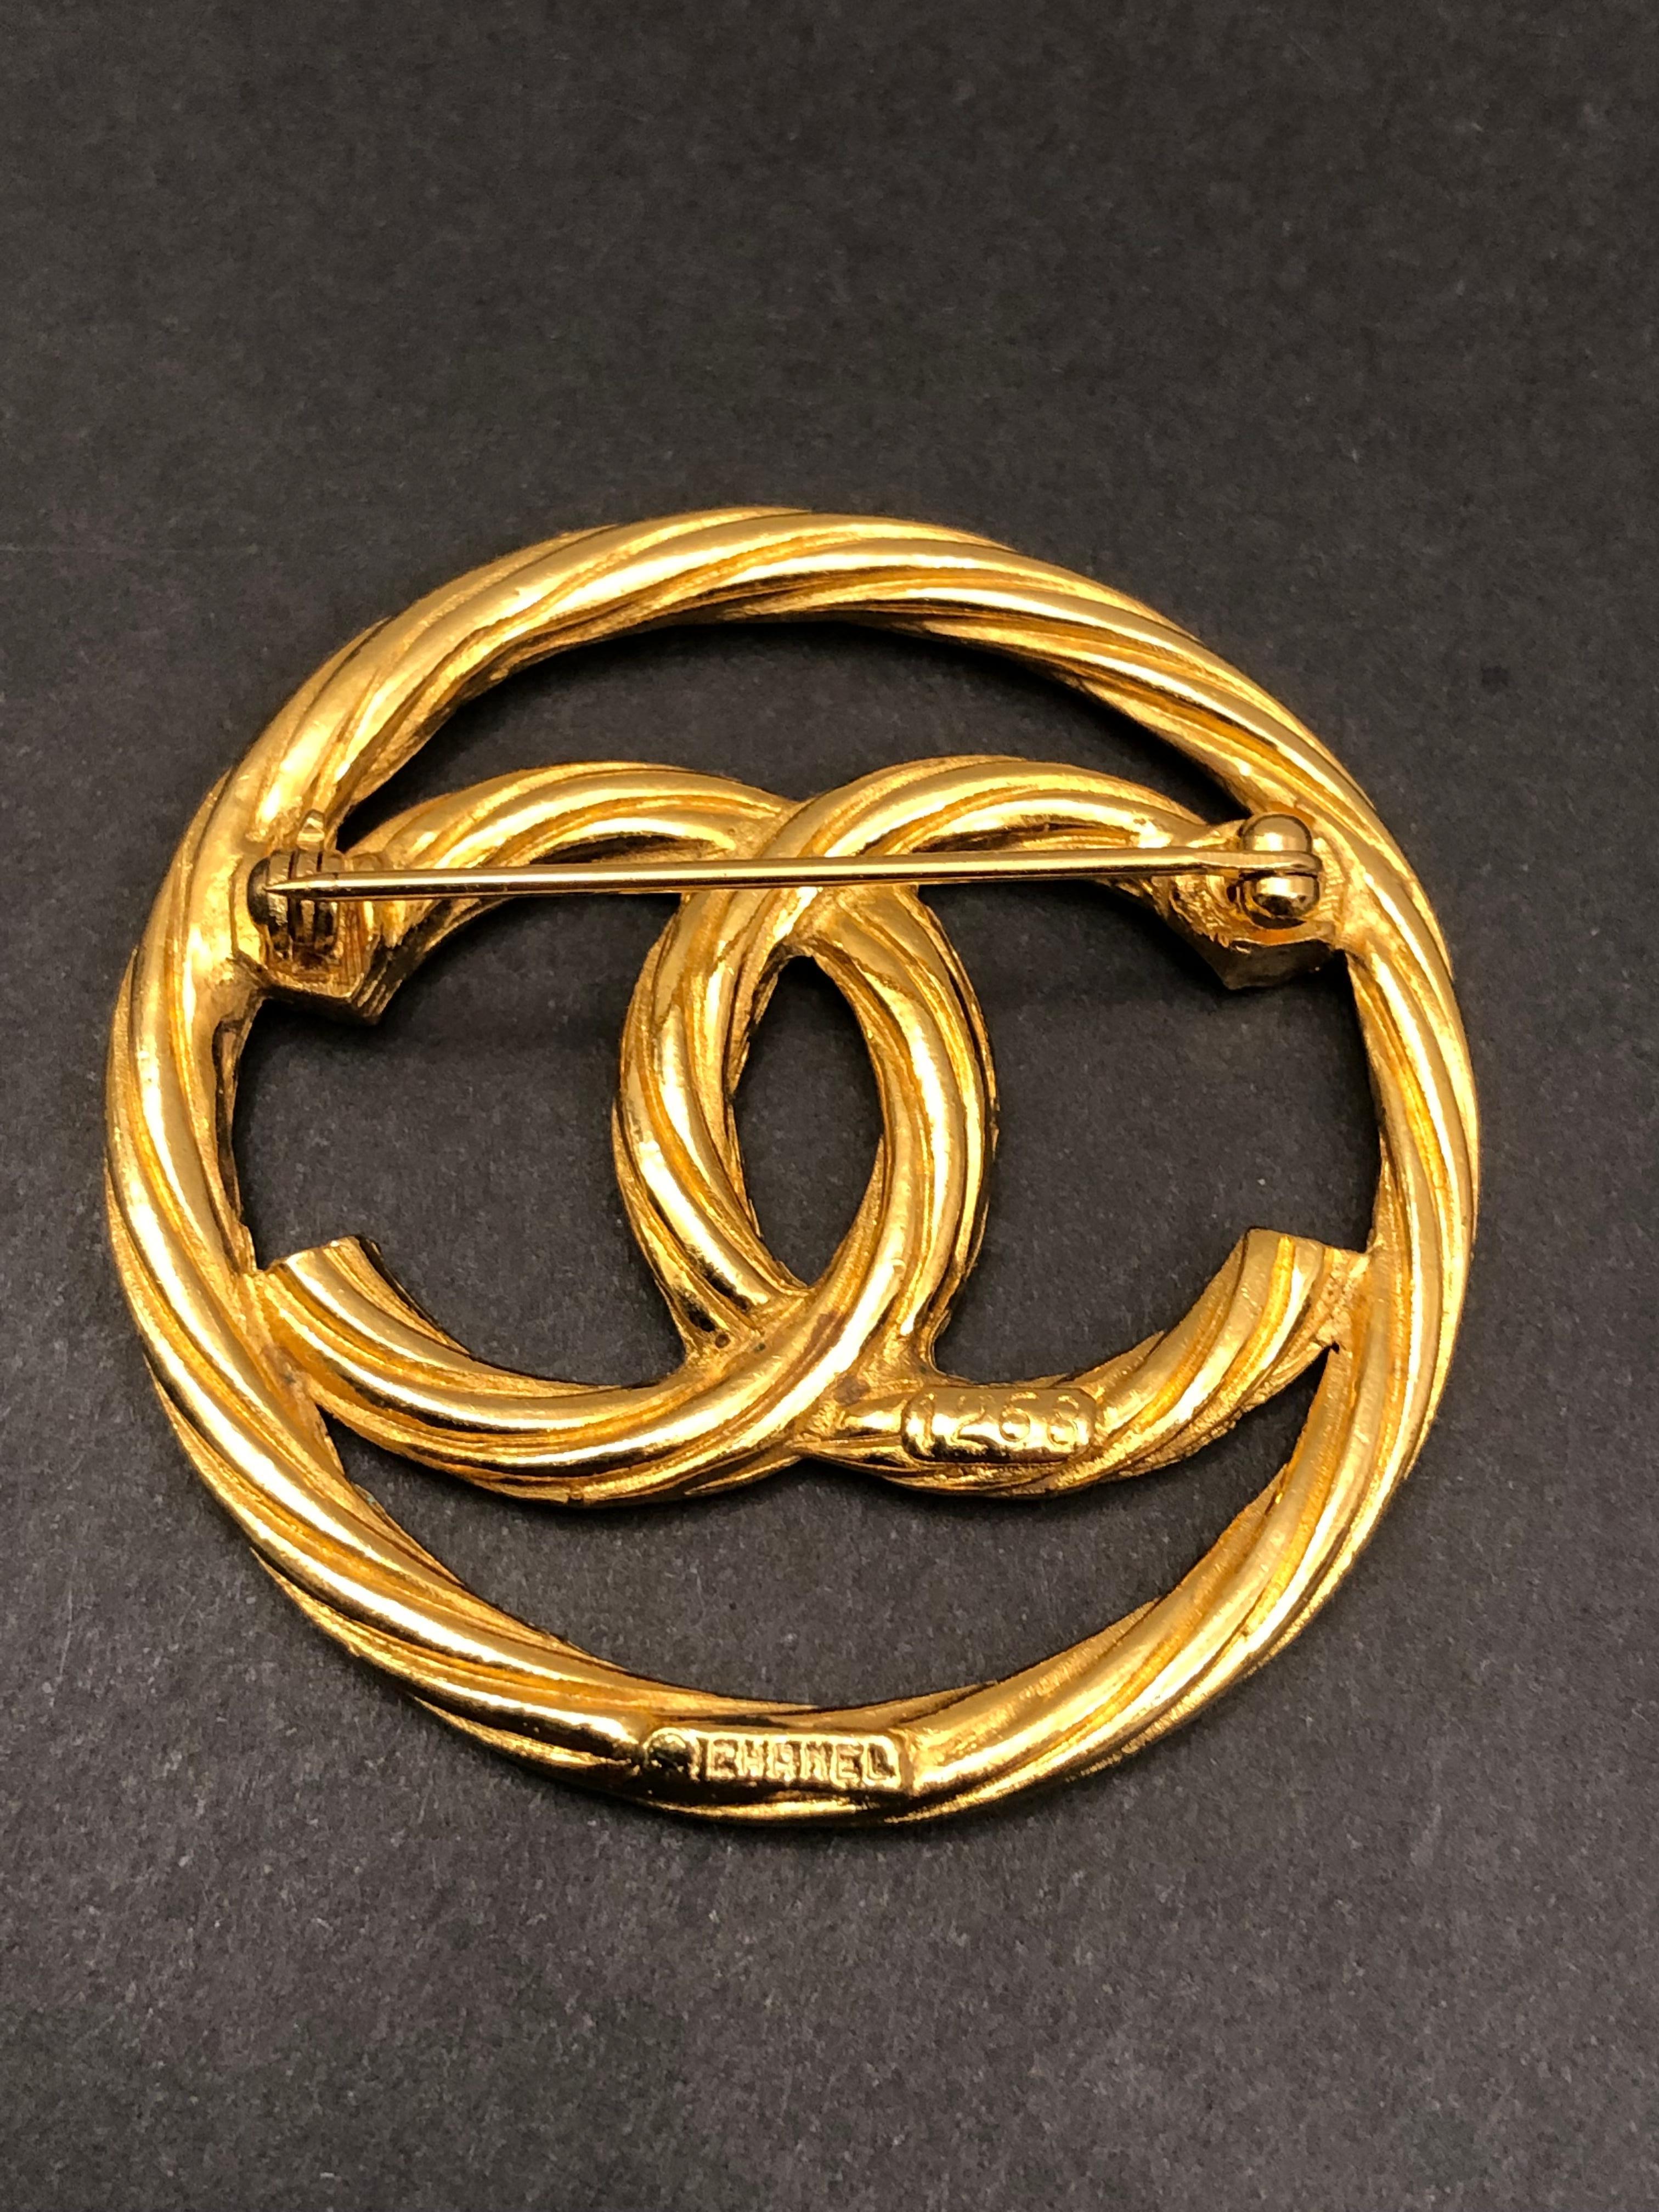 Diese goldfarbene Vintage-Brosche von CHANEL ist aus vergoldetem Metall gefertigt und zeigt ein CC-Logo. Gestempelt CHANEL 1268. Der Durchmesser beträgt etwa 4.3 cm. Wird mit Box geliefert. 

Zustand: Ausgezeichneter Vintage-Zustand mit minimalen